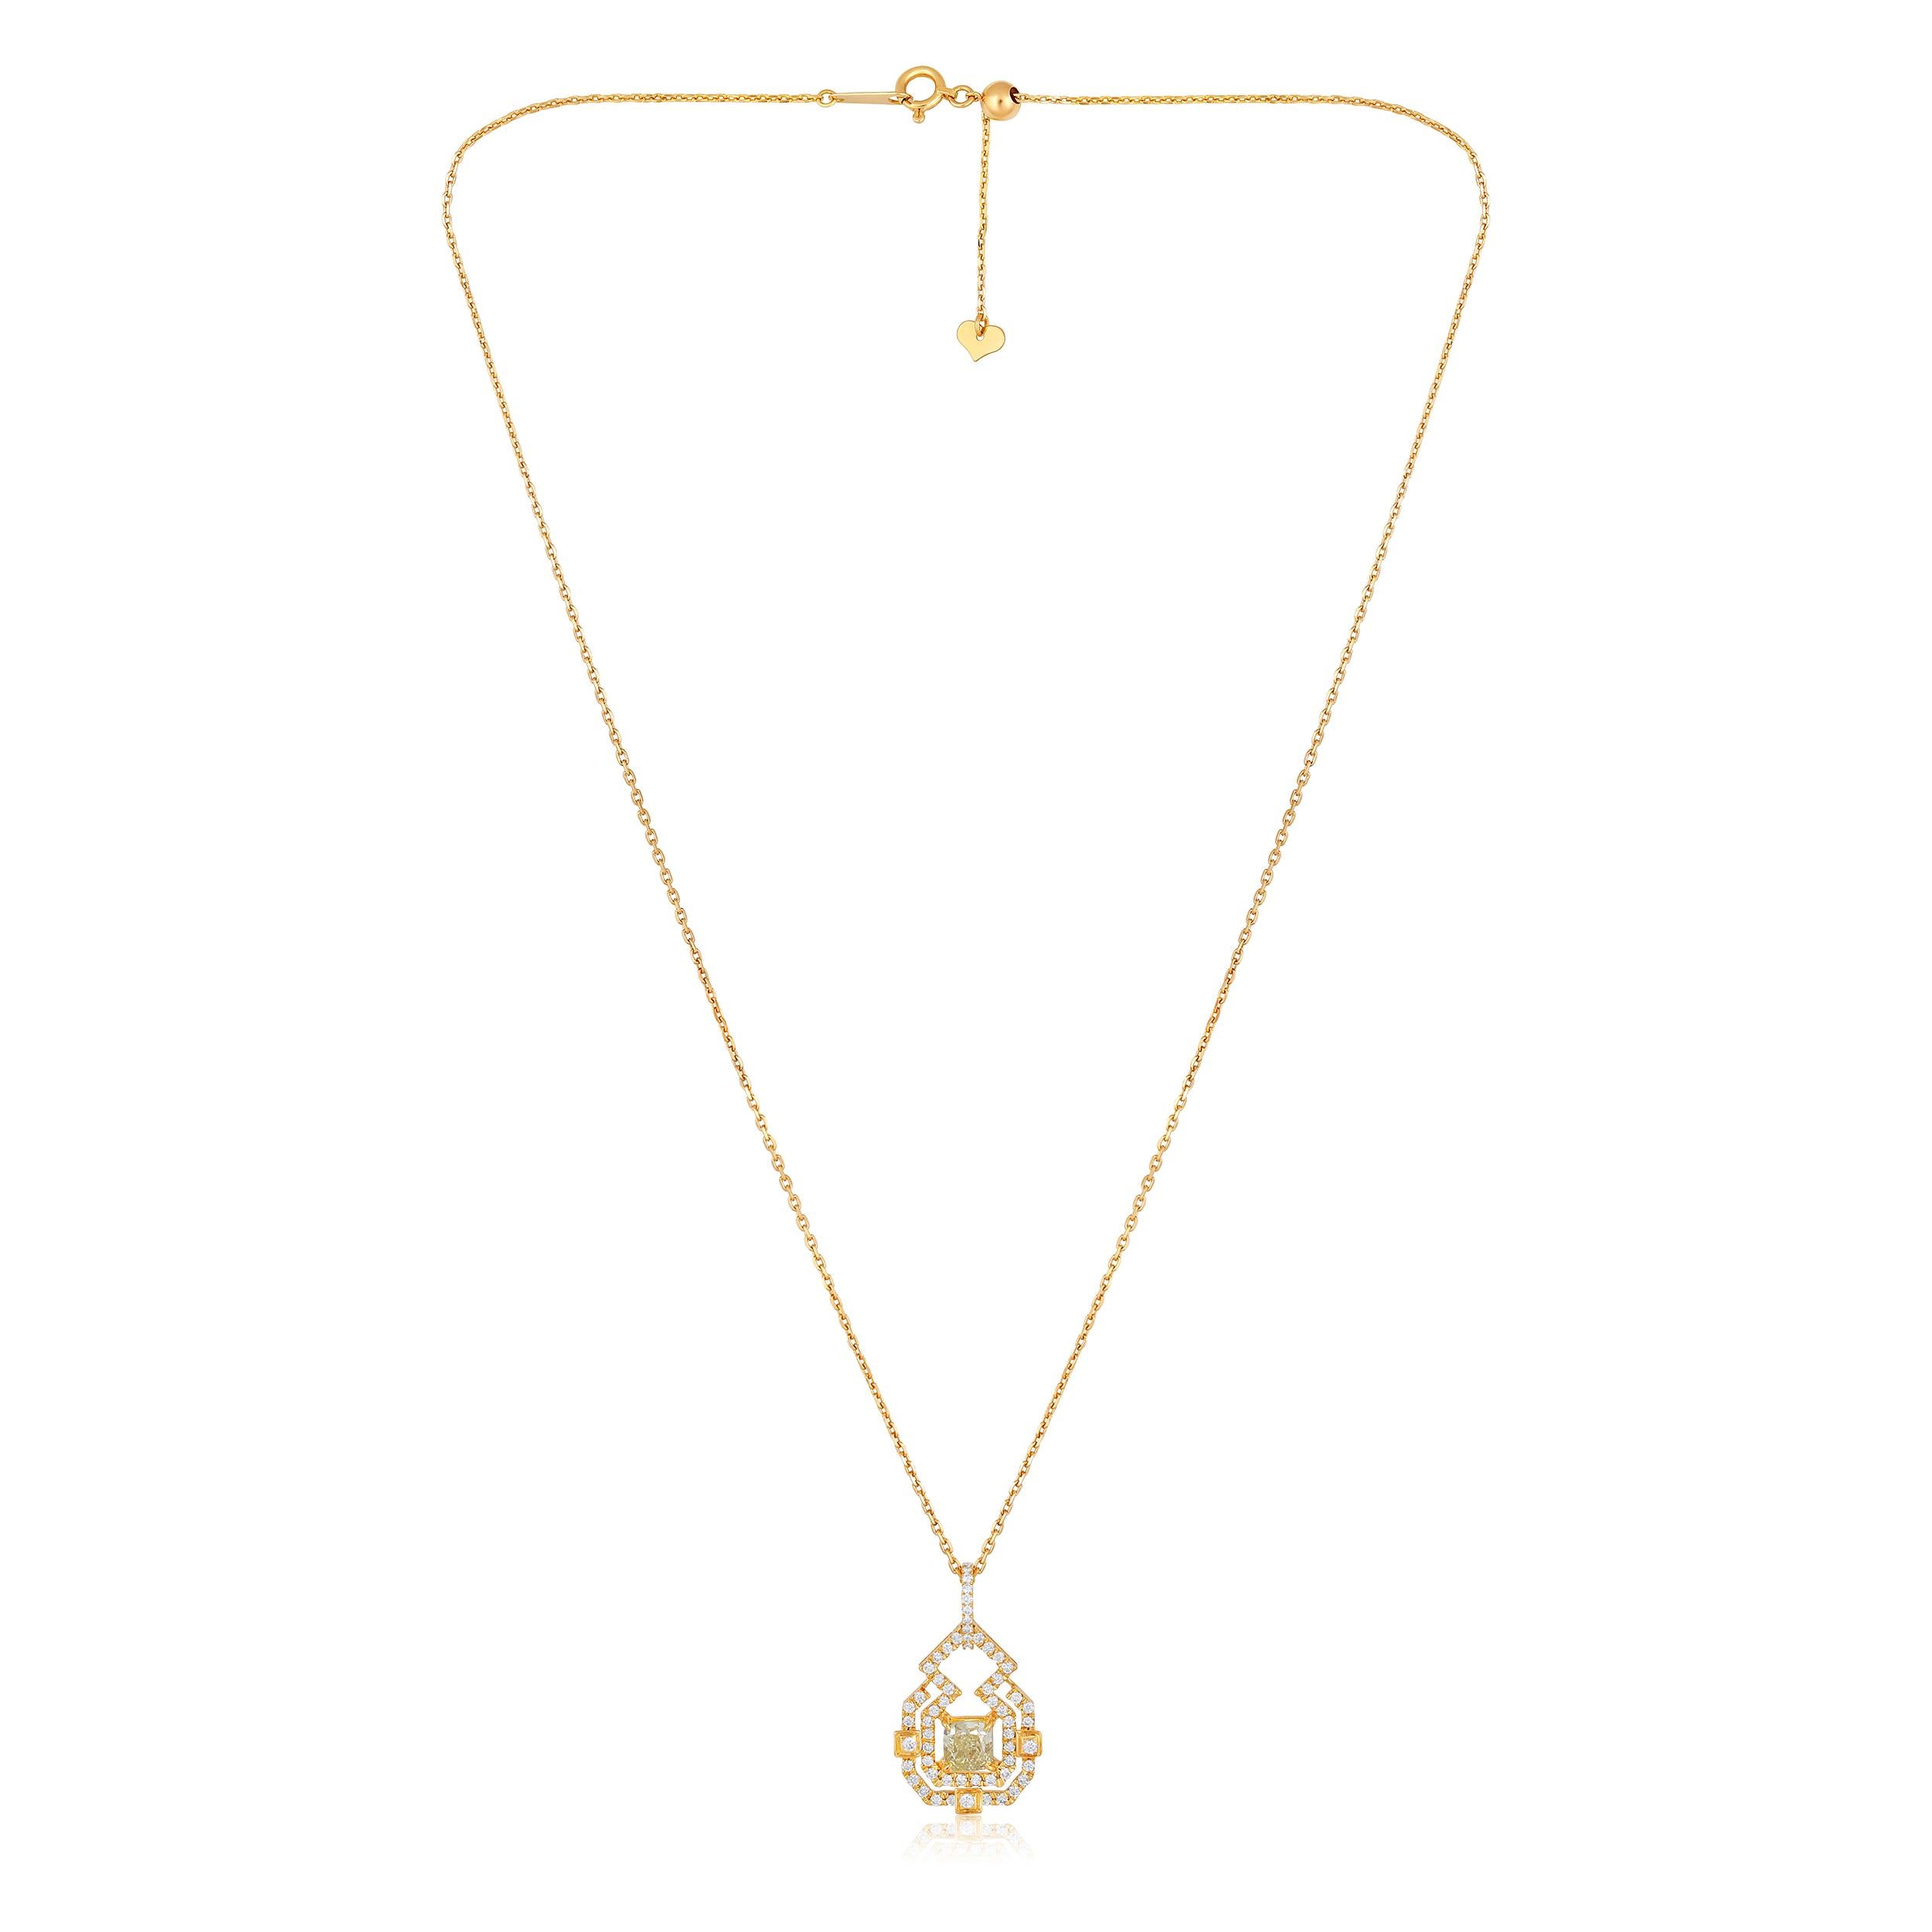 Die aus 4,32 Gramm 18-karätigem Gelbgold gefertigte Halskette enthält 58 natürliche Diamanten im Rosenschliff mit einem Gesamtgewicht von 0,35 Karat in den Farben E-F und VVS-VS sowie 1 natürlichen Diamanten im Kissenschliff mit einem Gesamtgewicht